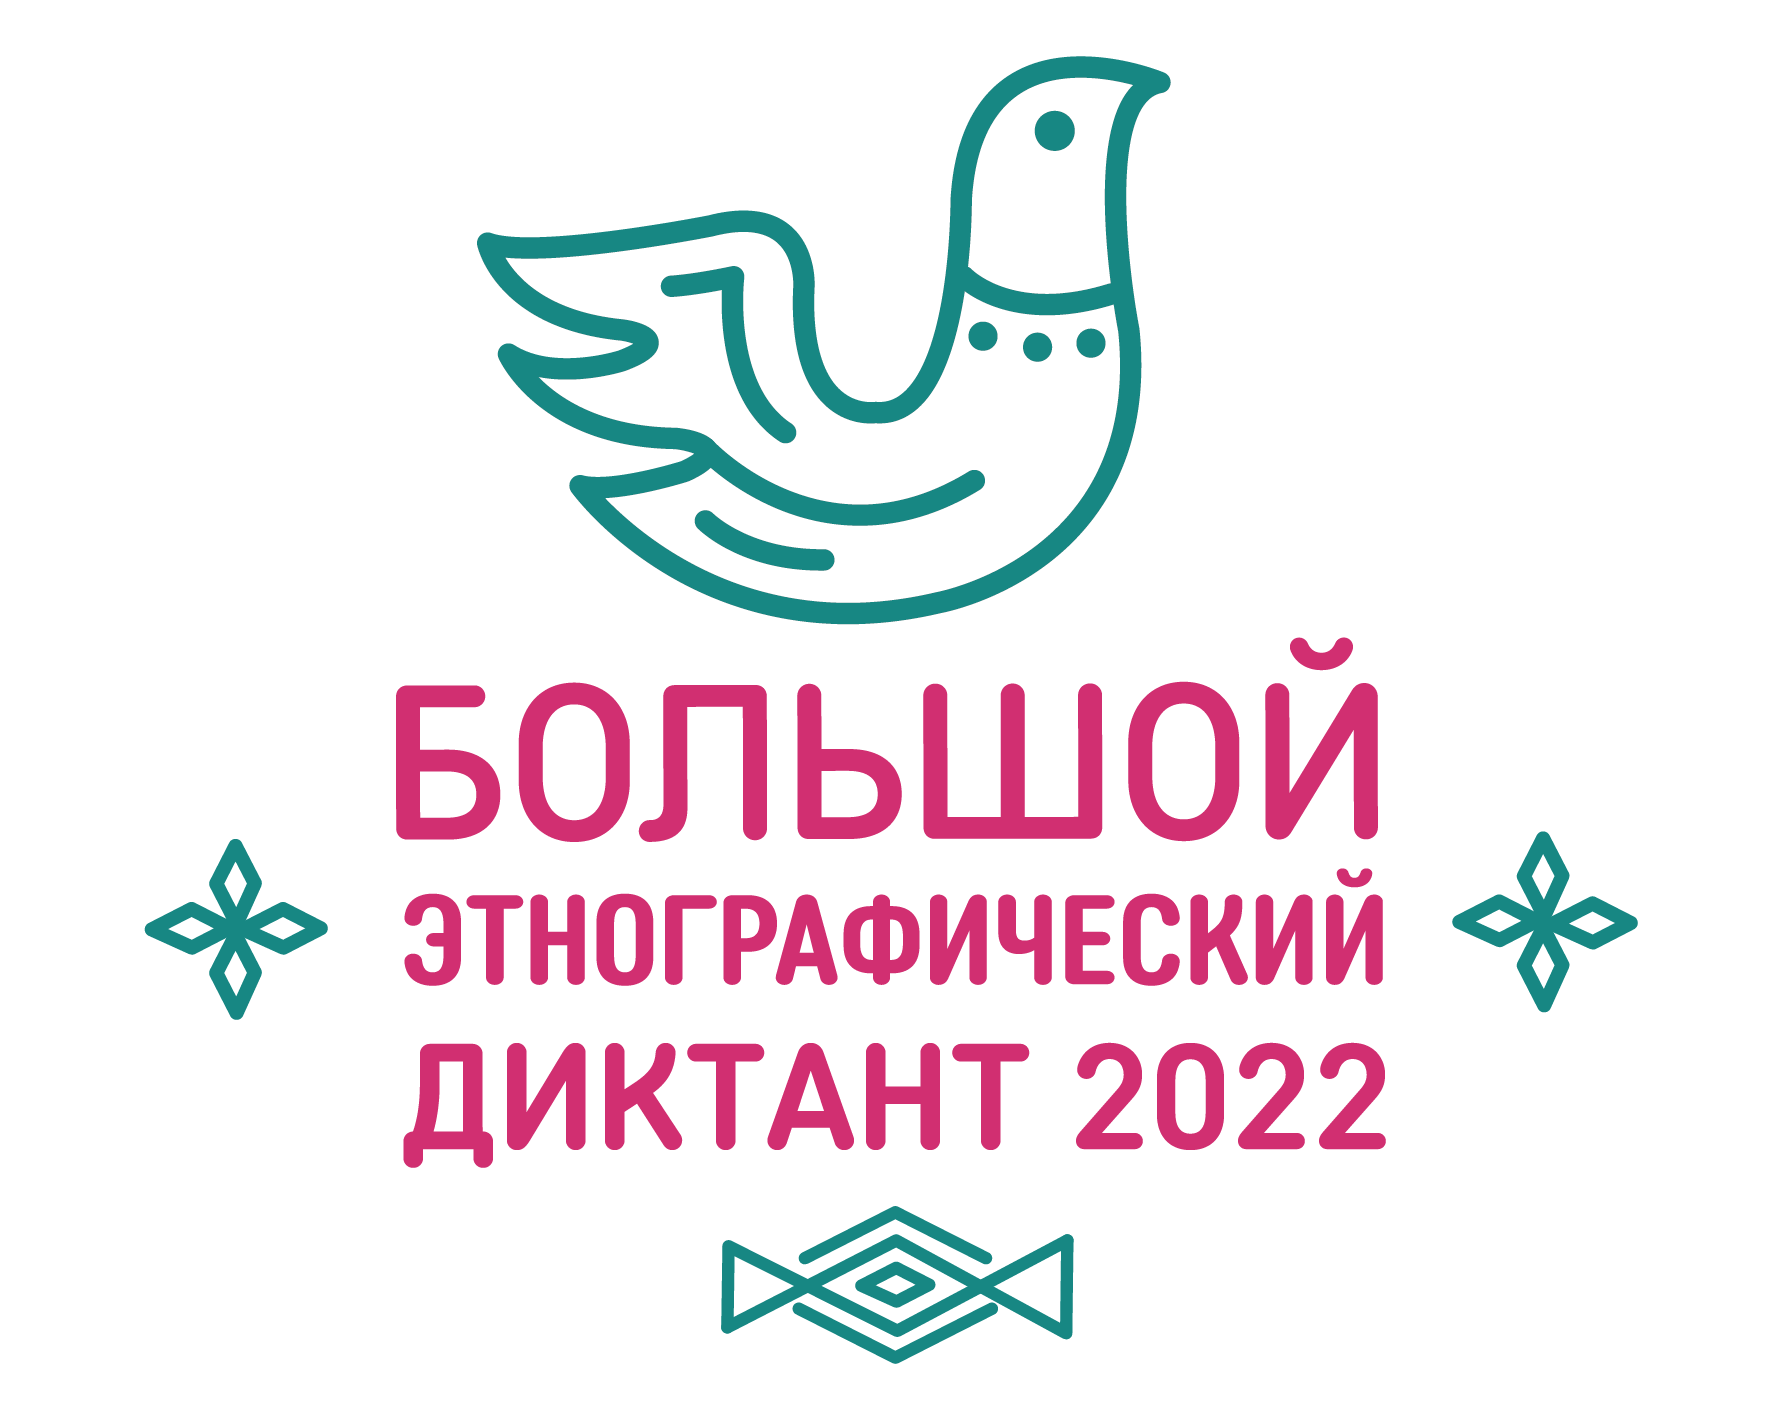 БЭД logo 2022 logo vertik b